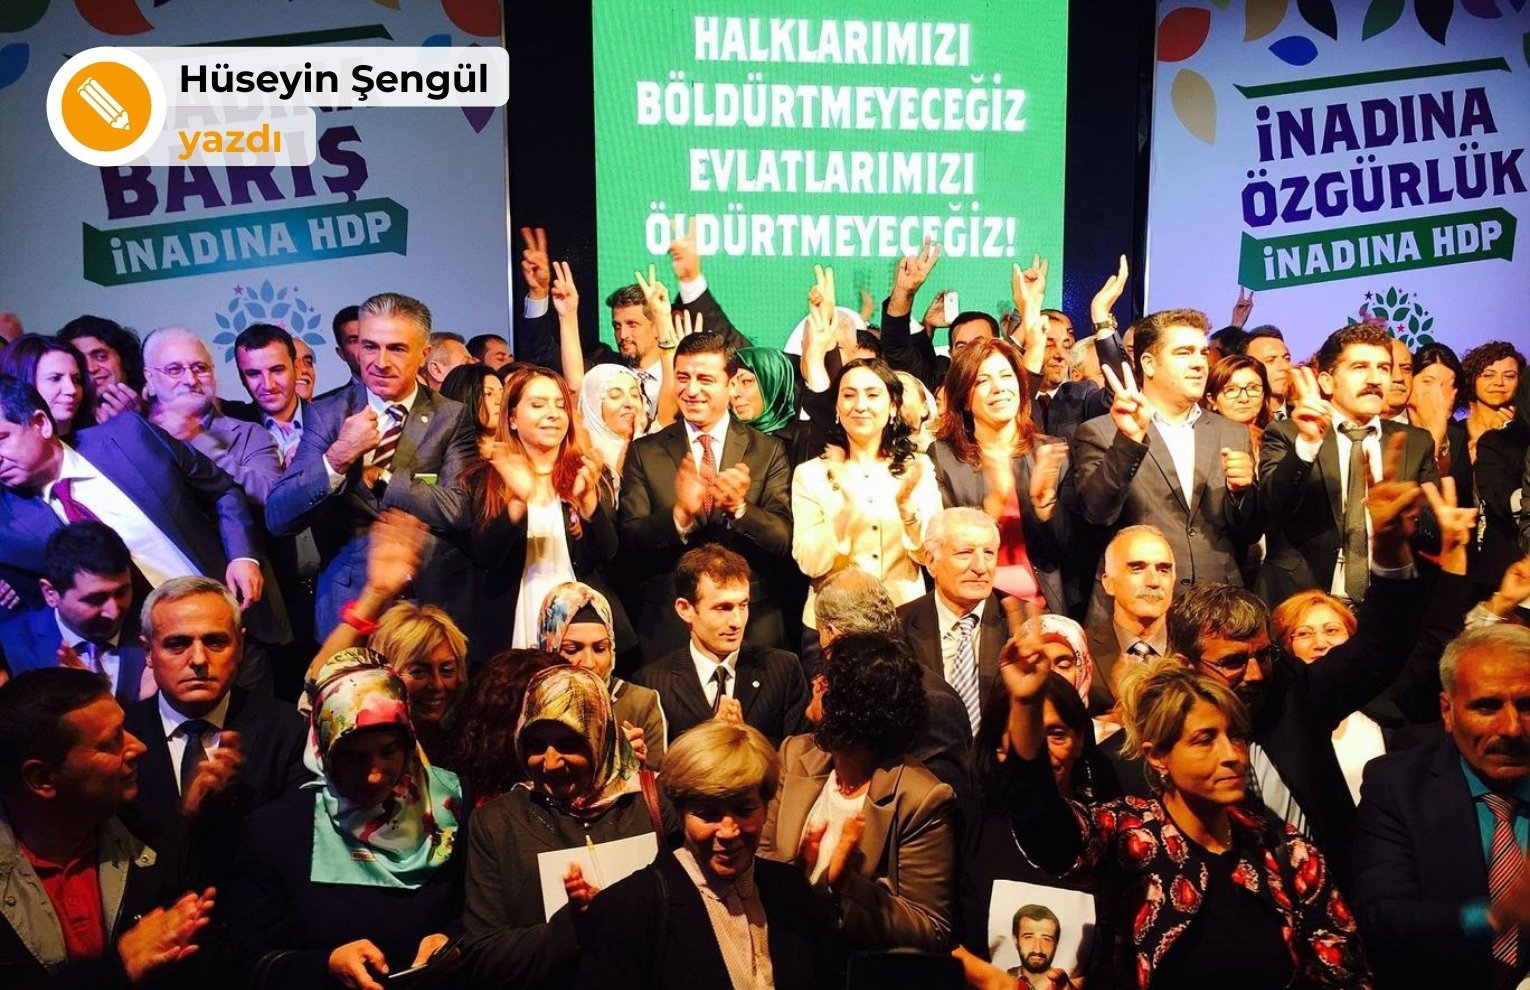 HDP küllerinden doğan bir partidir